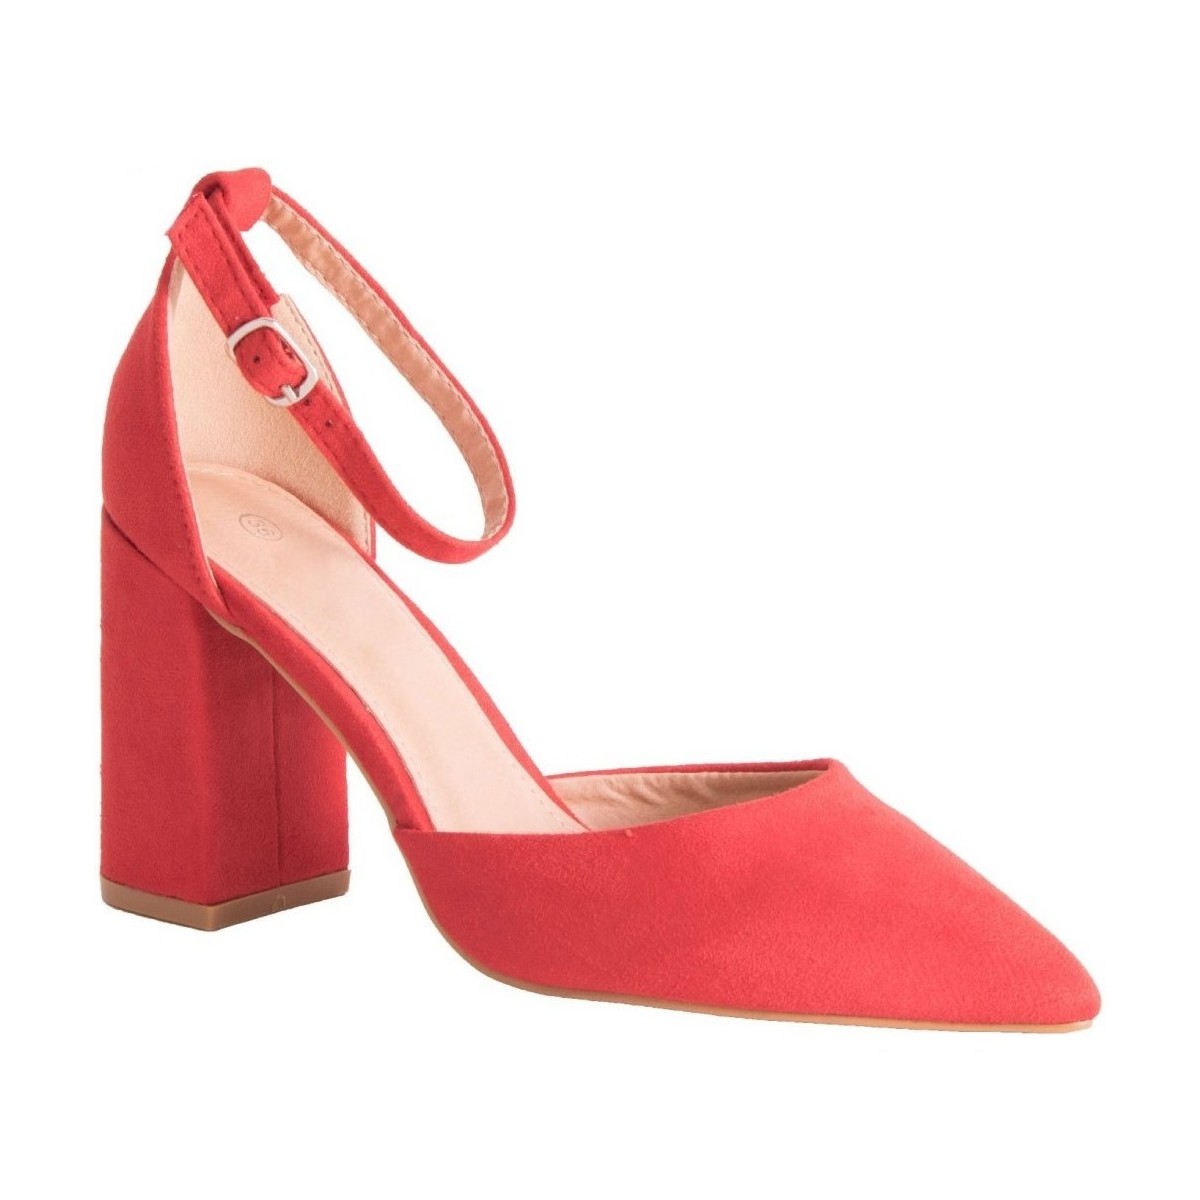 Chaussures Femme Escarpins Primtex  Rouge